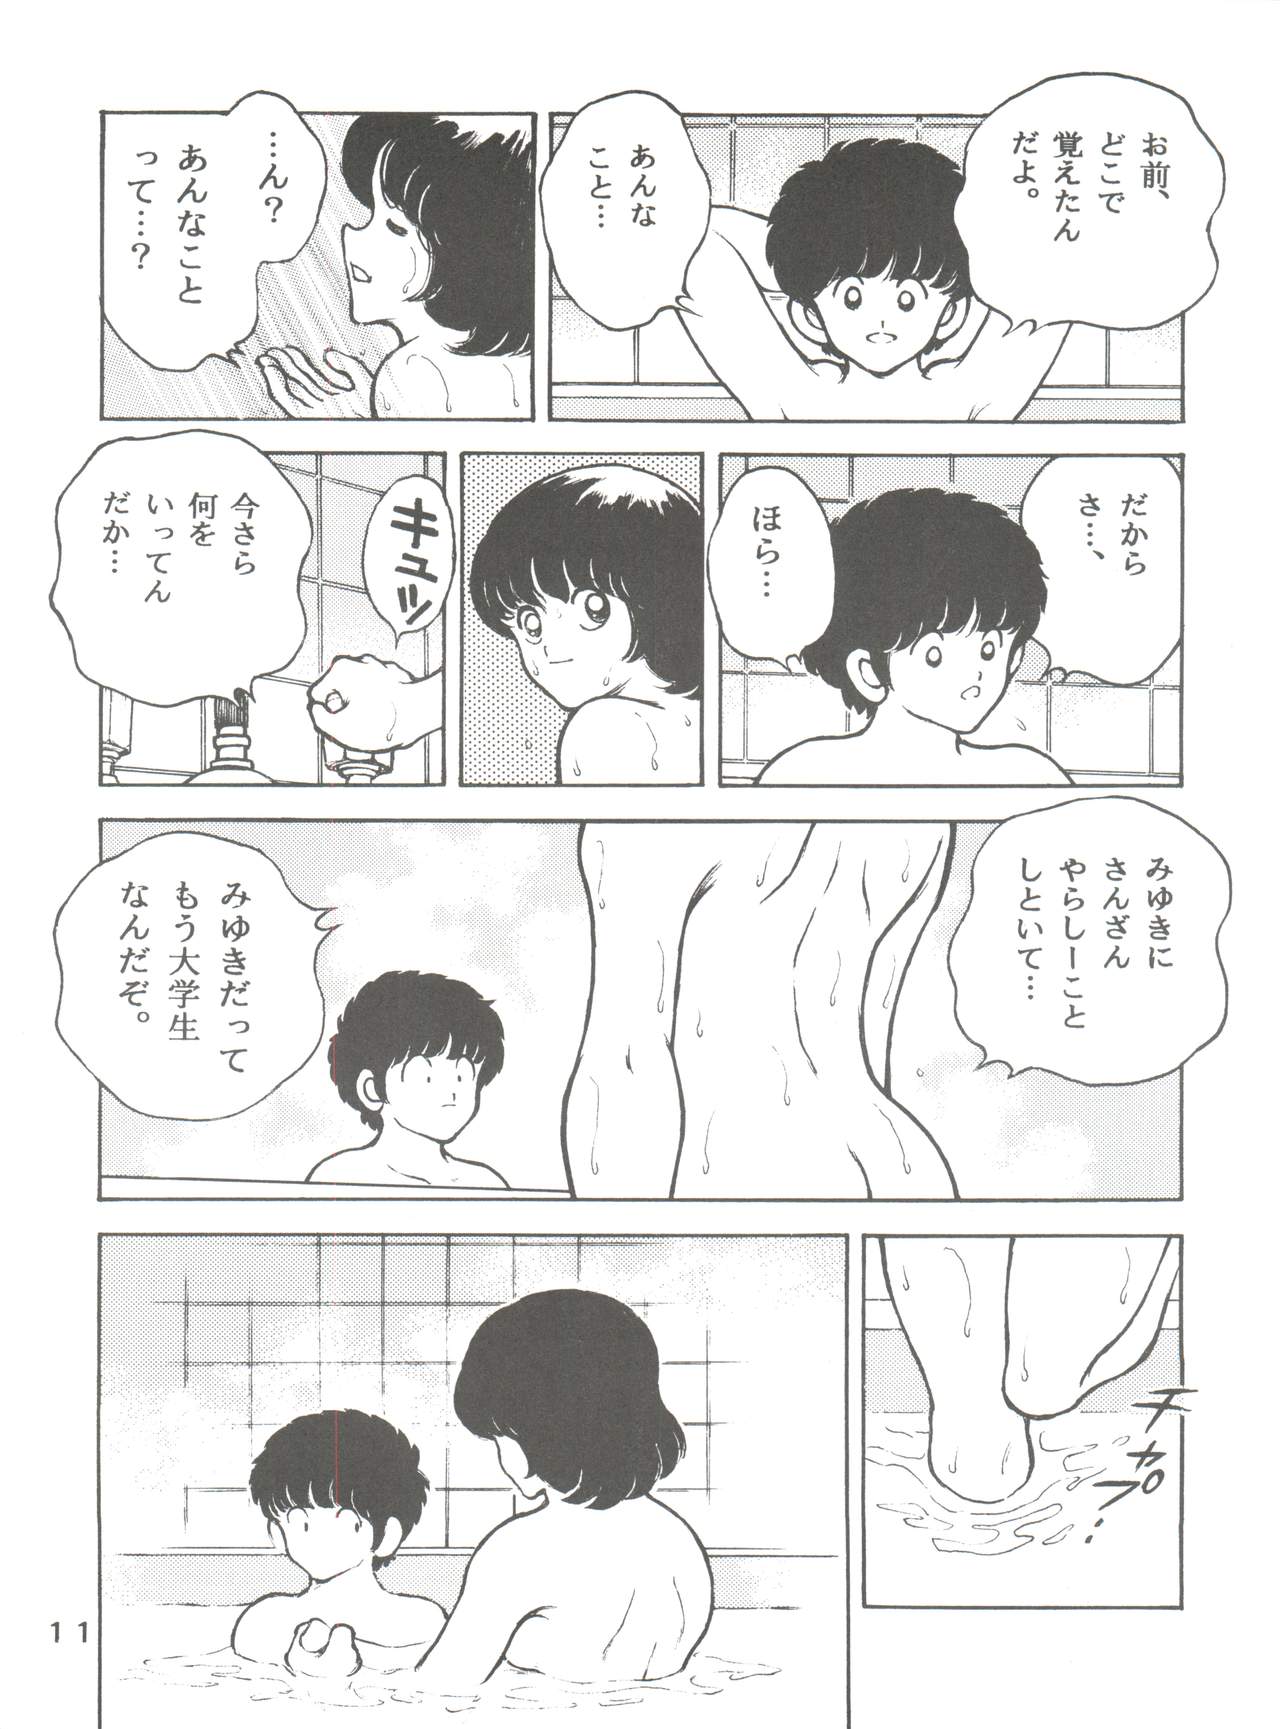 [STUDIO SHARAKU (Sharaku Seiya)] Kanshoku -TOUCH- vol.5 (Miyuki) [2000-08-13] page 11 full